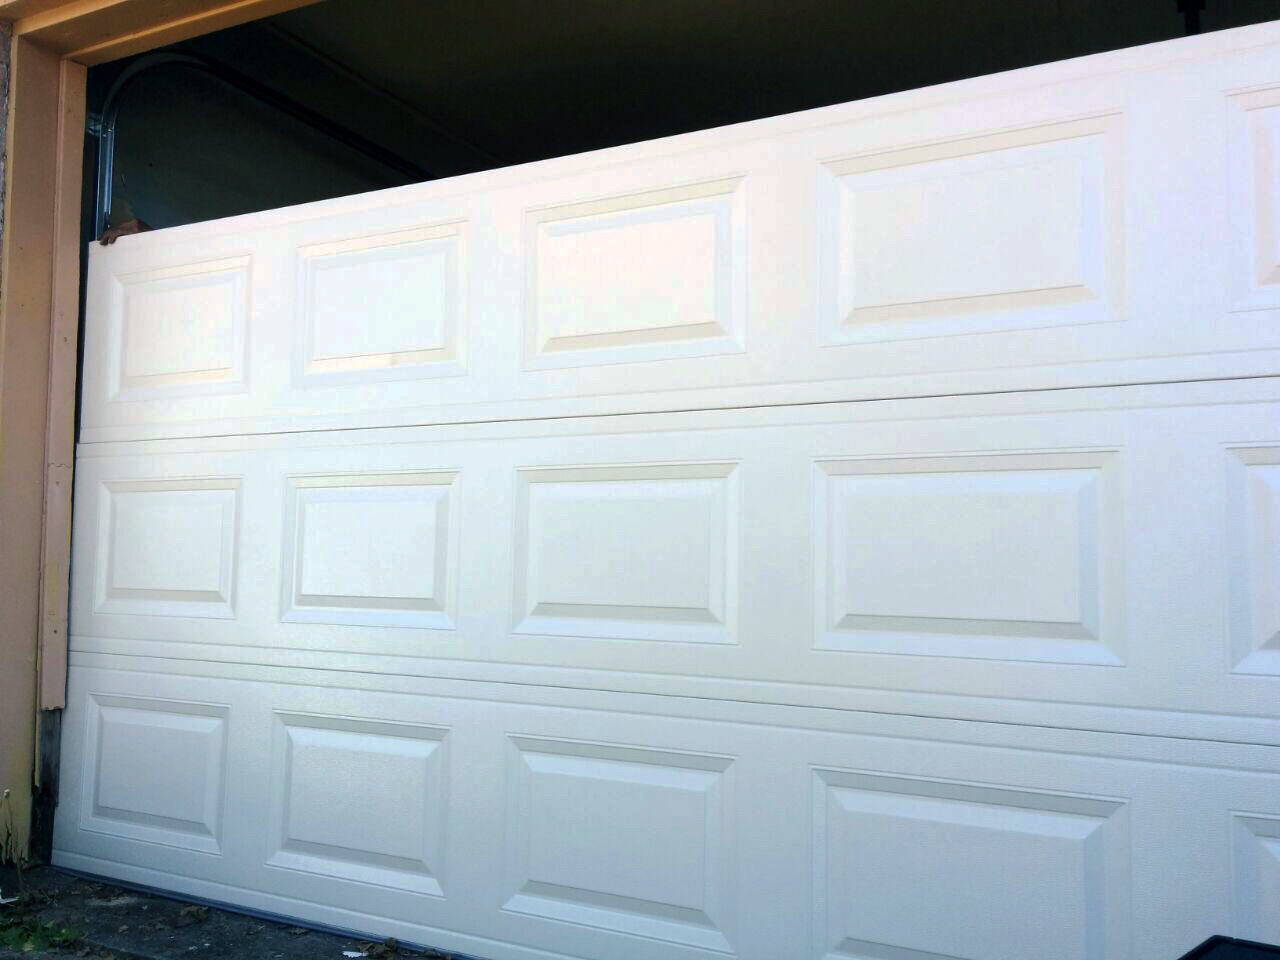 3 Ways to Winterize Garage Doors